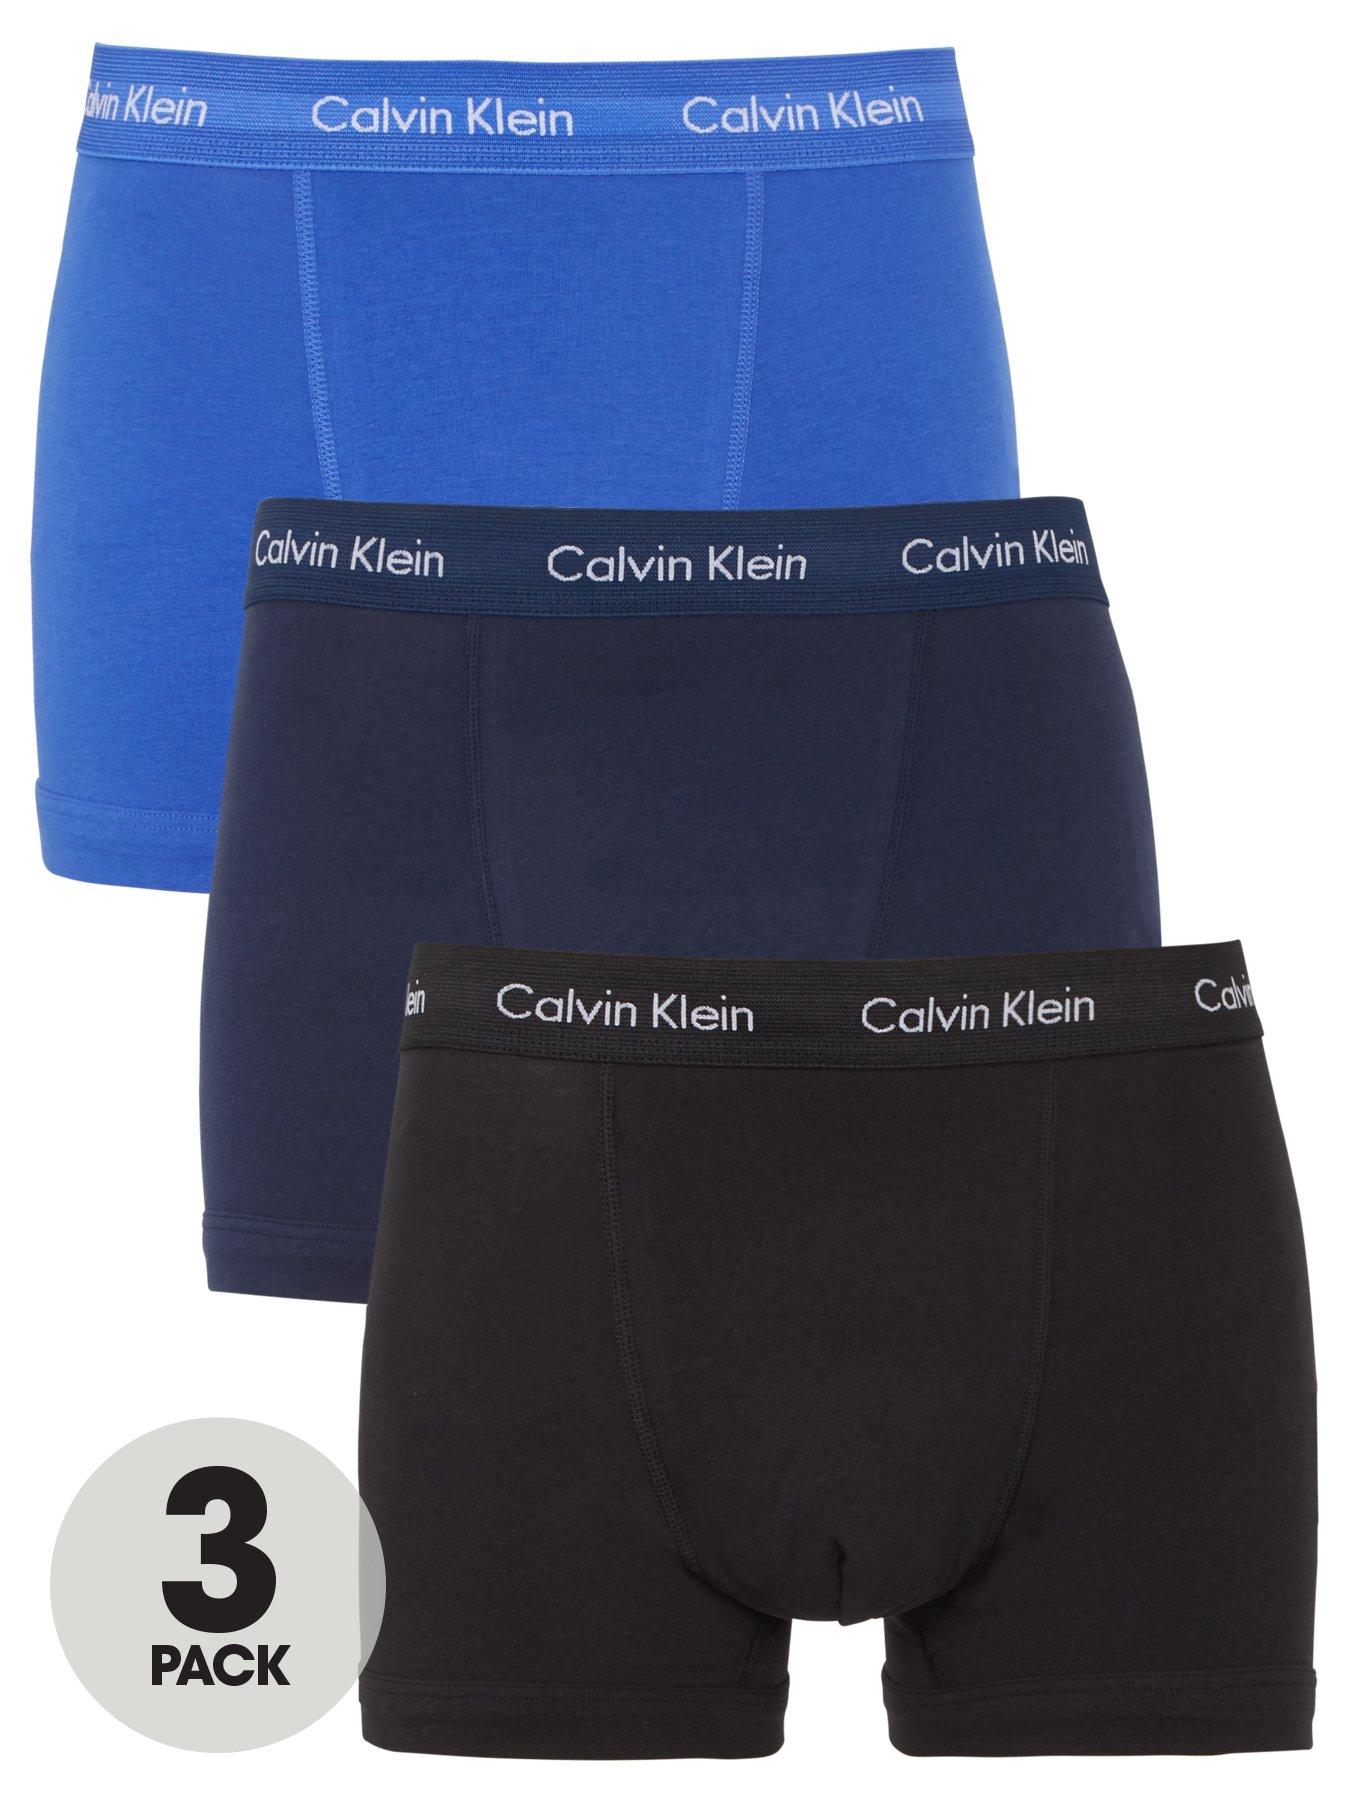 Calvin Klein Pro Mesh Men's Boxer Brief Underwear, Gray, 3 Pack, Medium -  NEW 